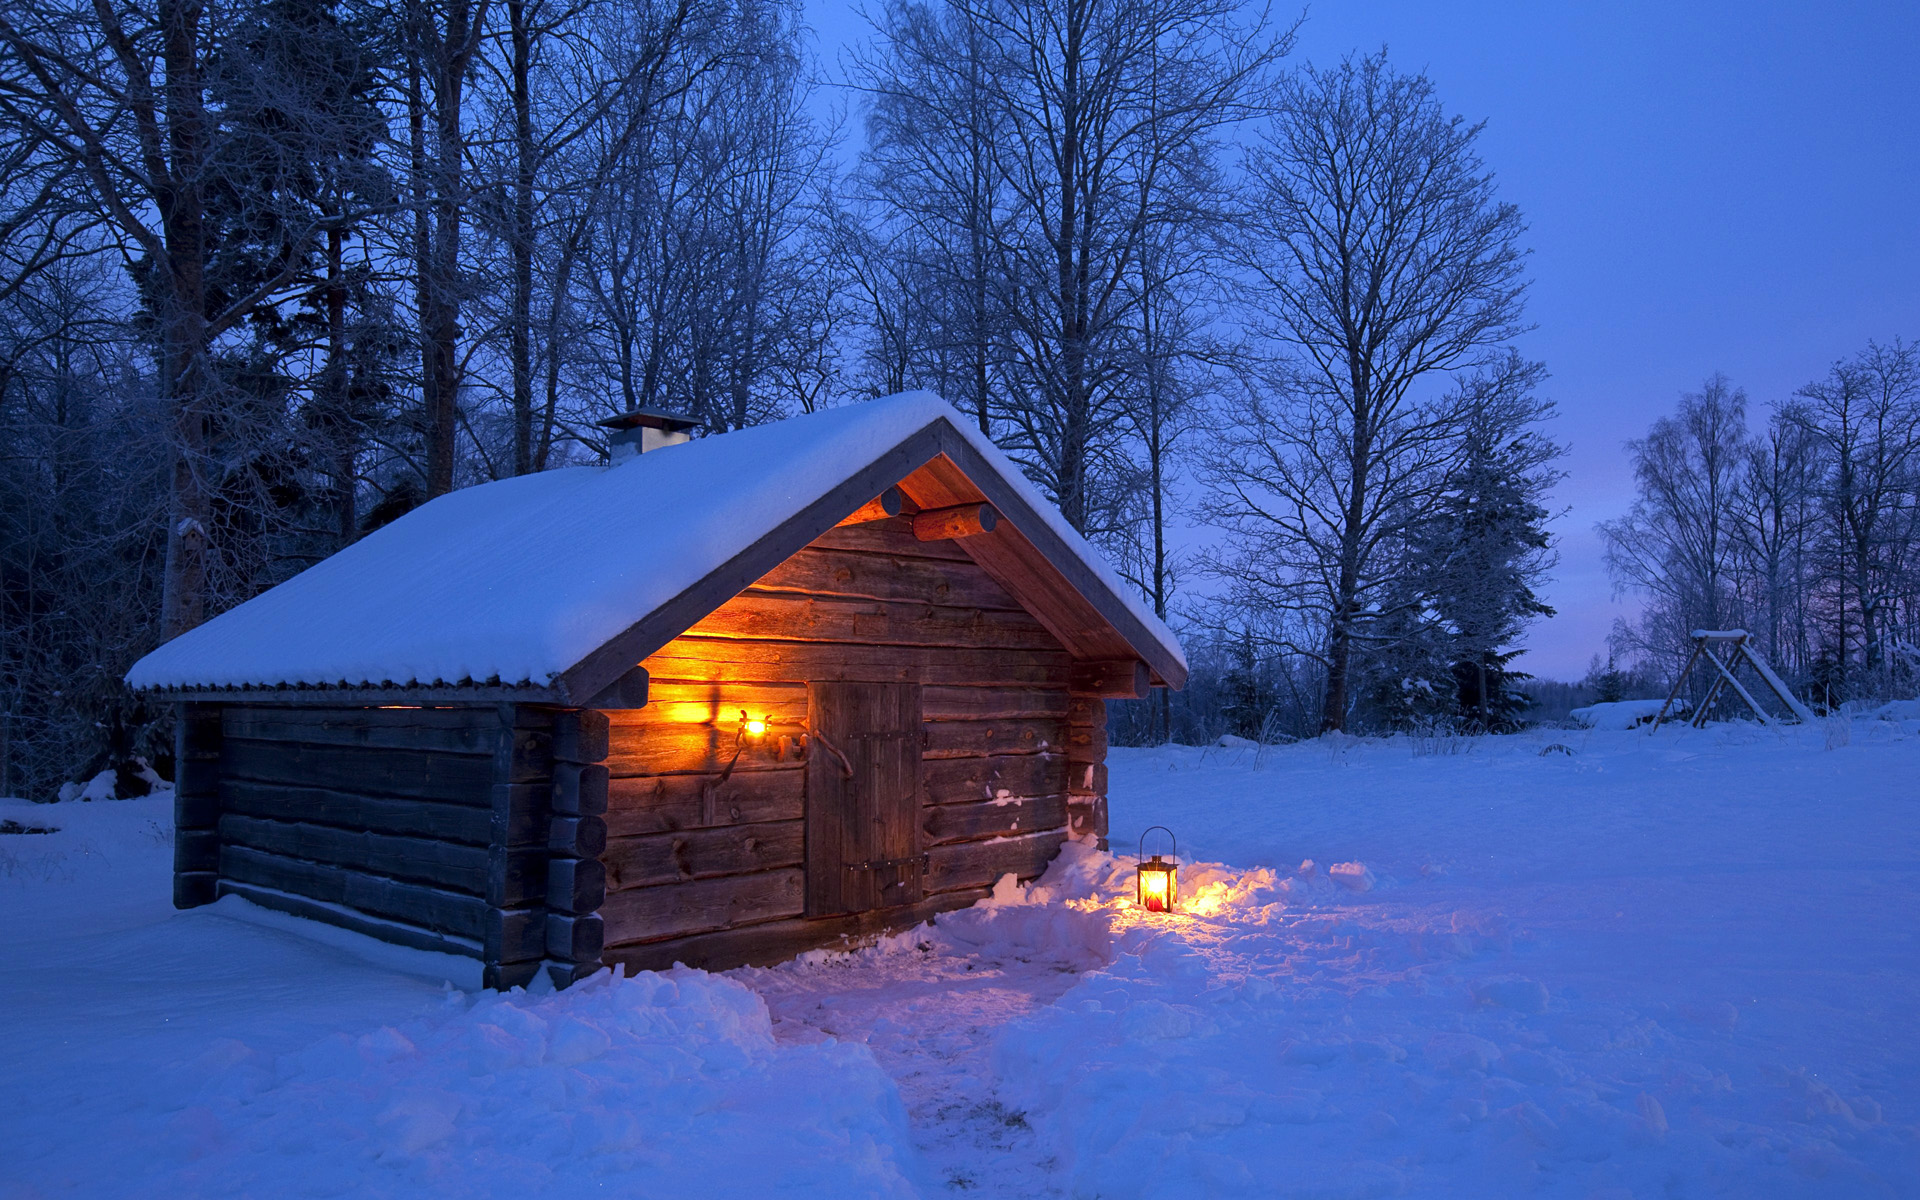 夜晚雪景图片大全下雪 夜晚下雪的图片唯美(8)